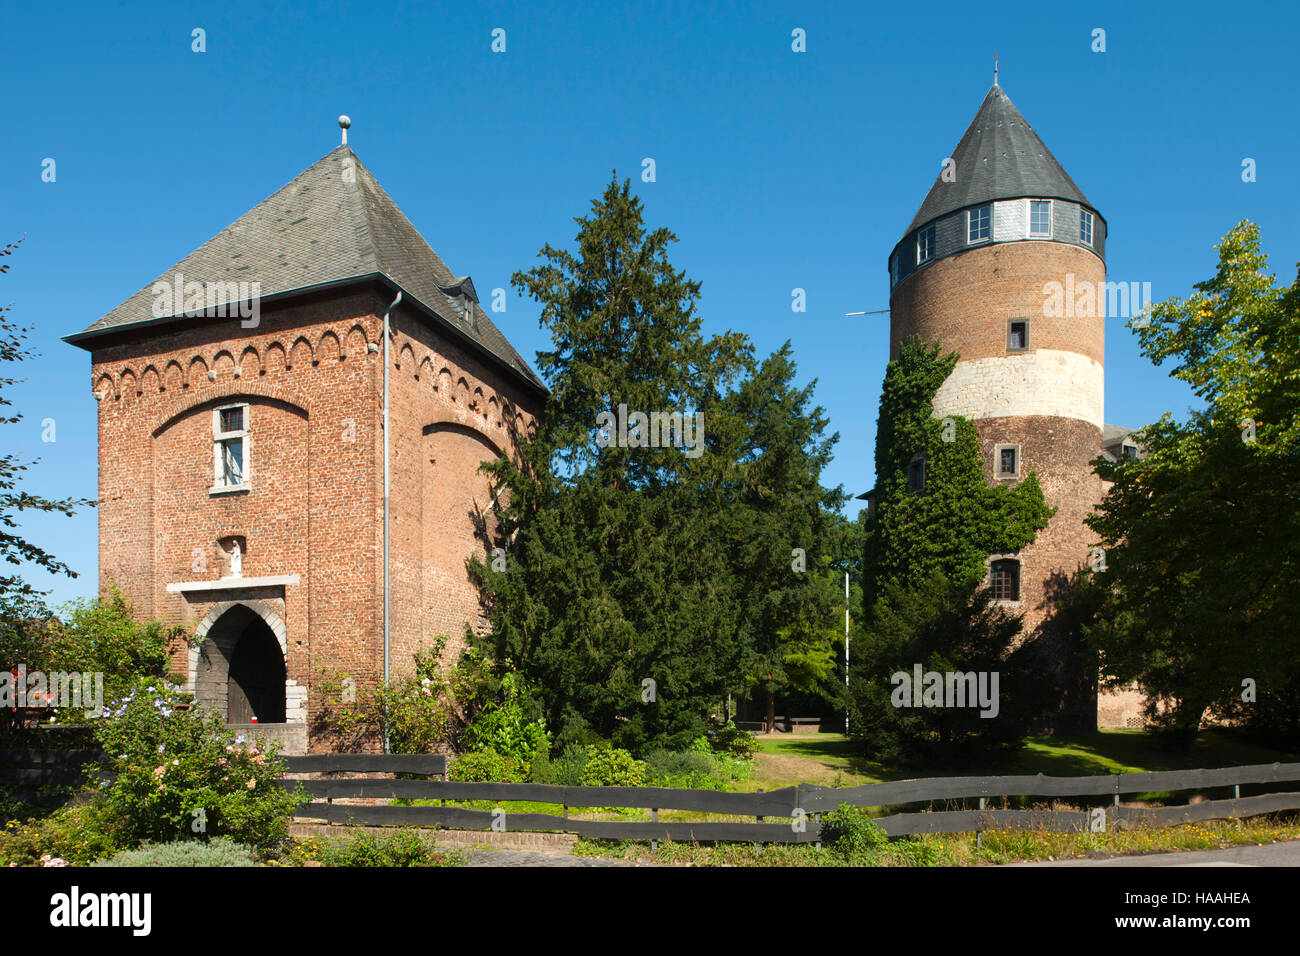 Deutschland, Nordrhein-Westfalen, Kreis Viersen, Brüggen, Burg Stock Photo